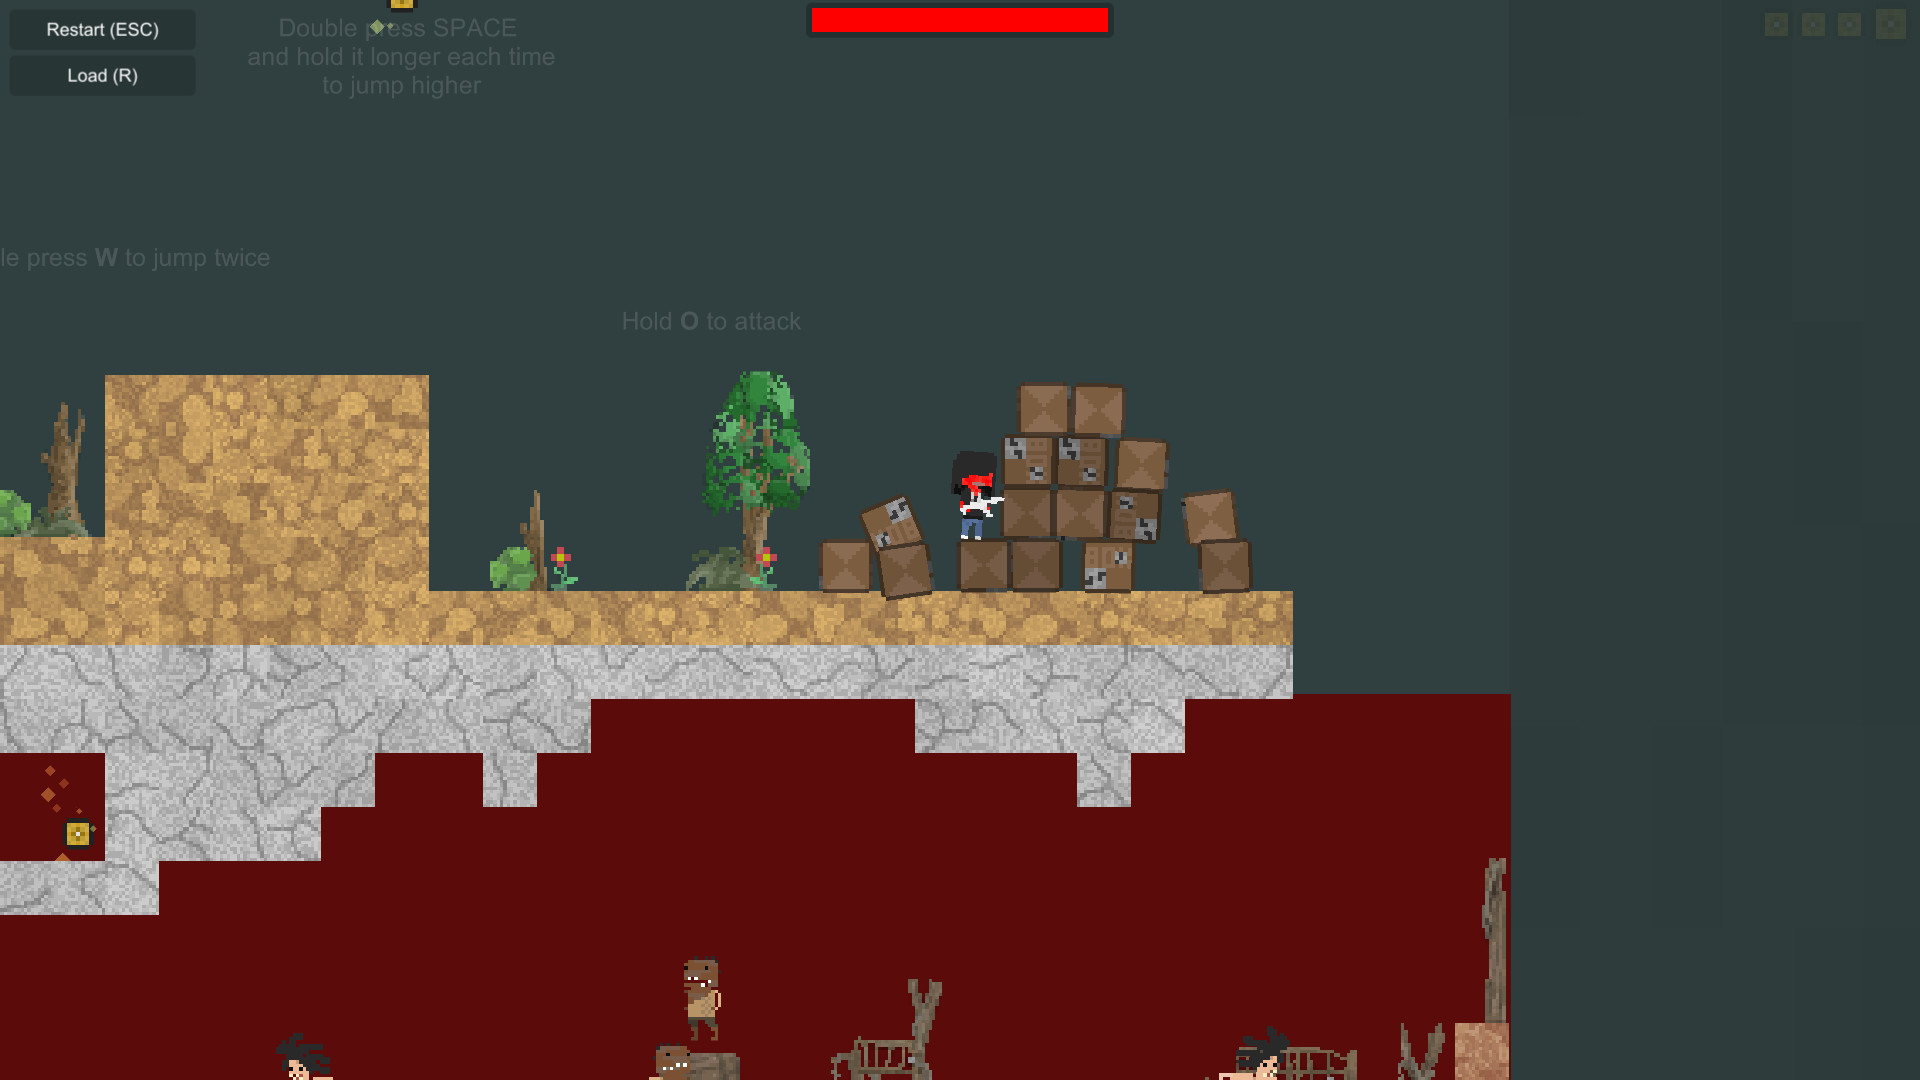 Red Dead Pixel Man screenshot